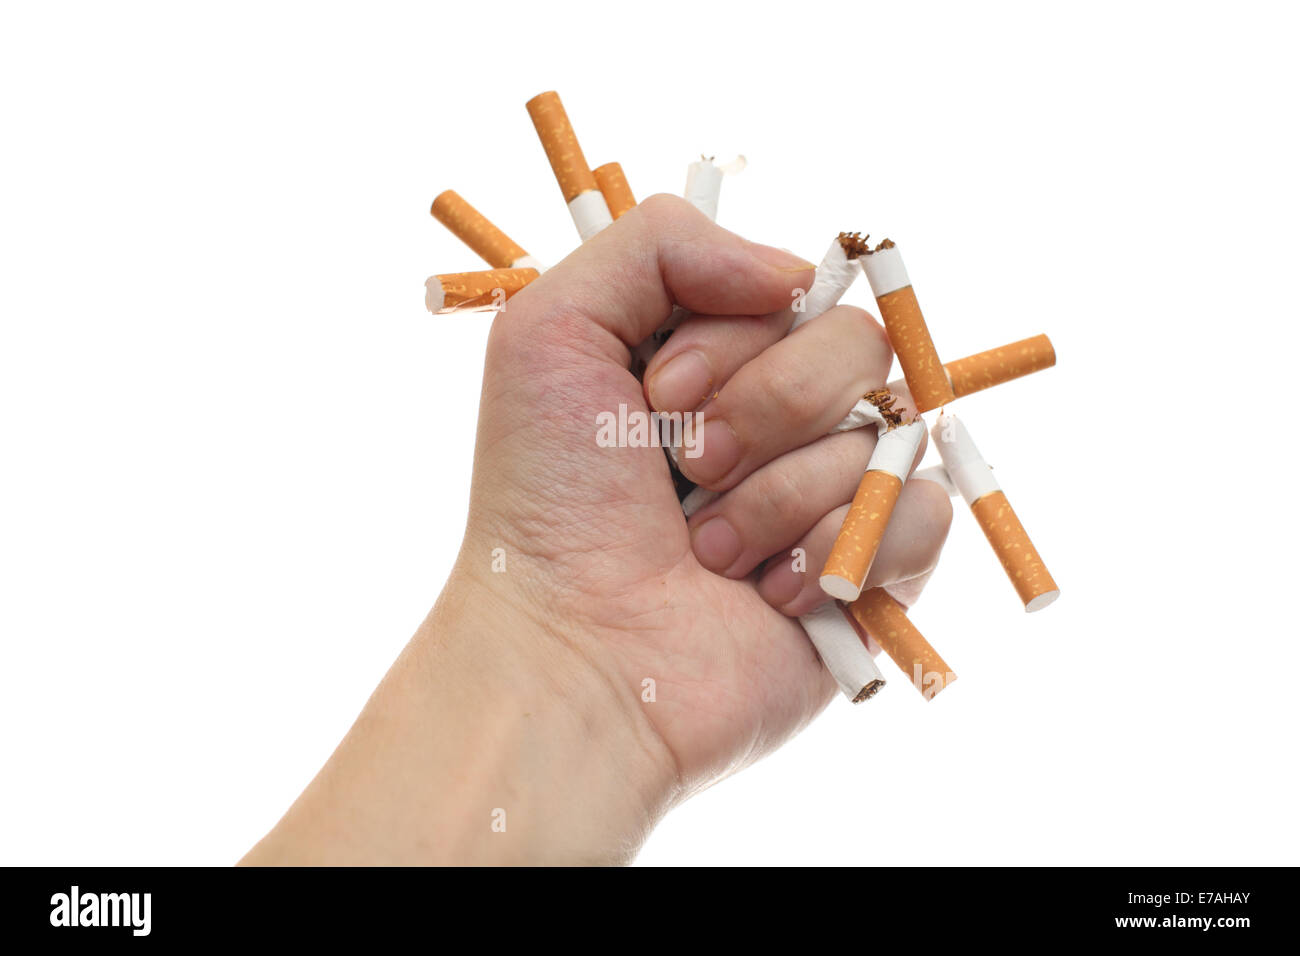 Uomo cercando di smettere di fumare. Immagine concettuale. Foto Stock